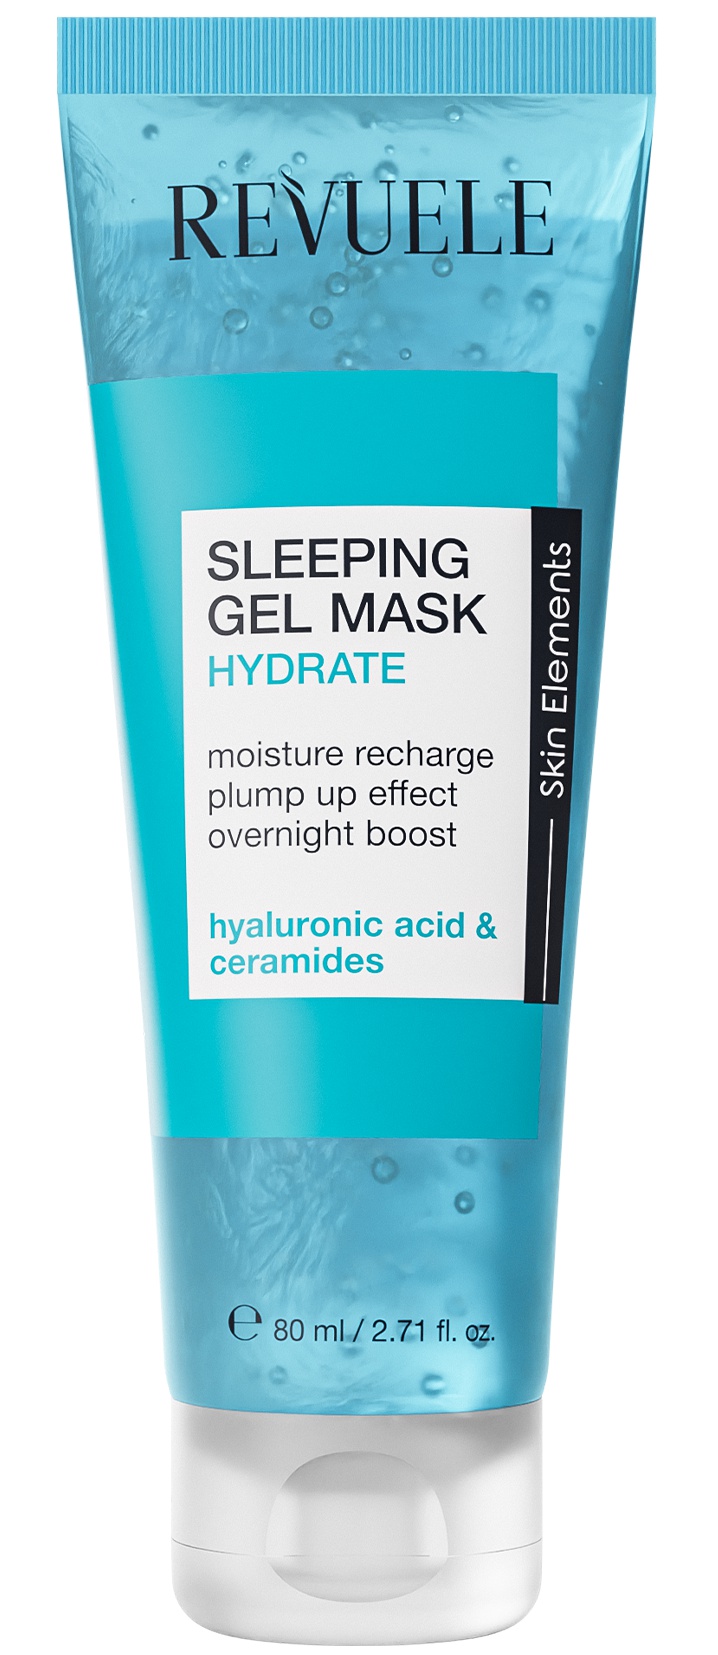 Revuele Sleeping Gel Mask Hydrate